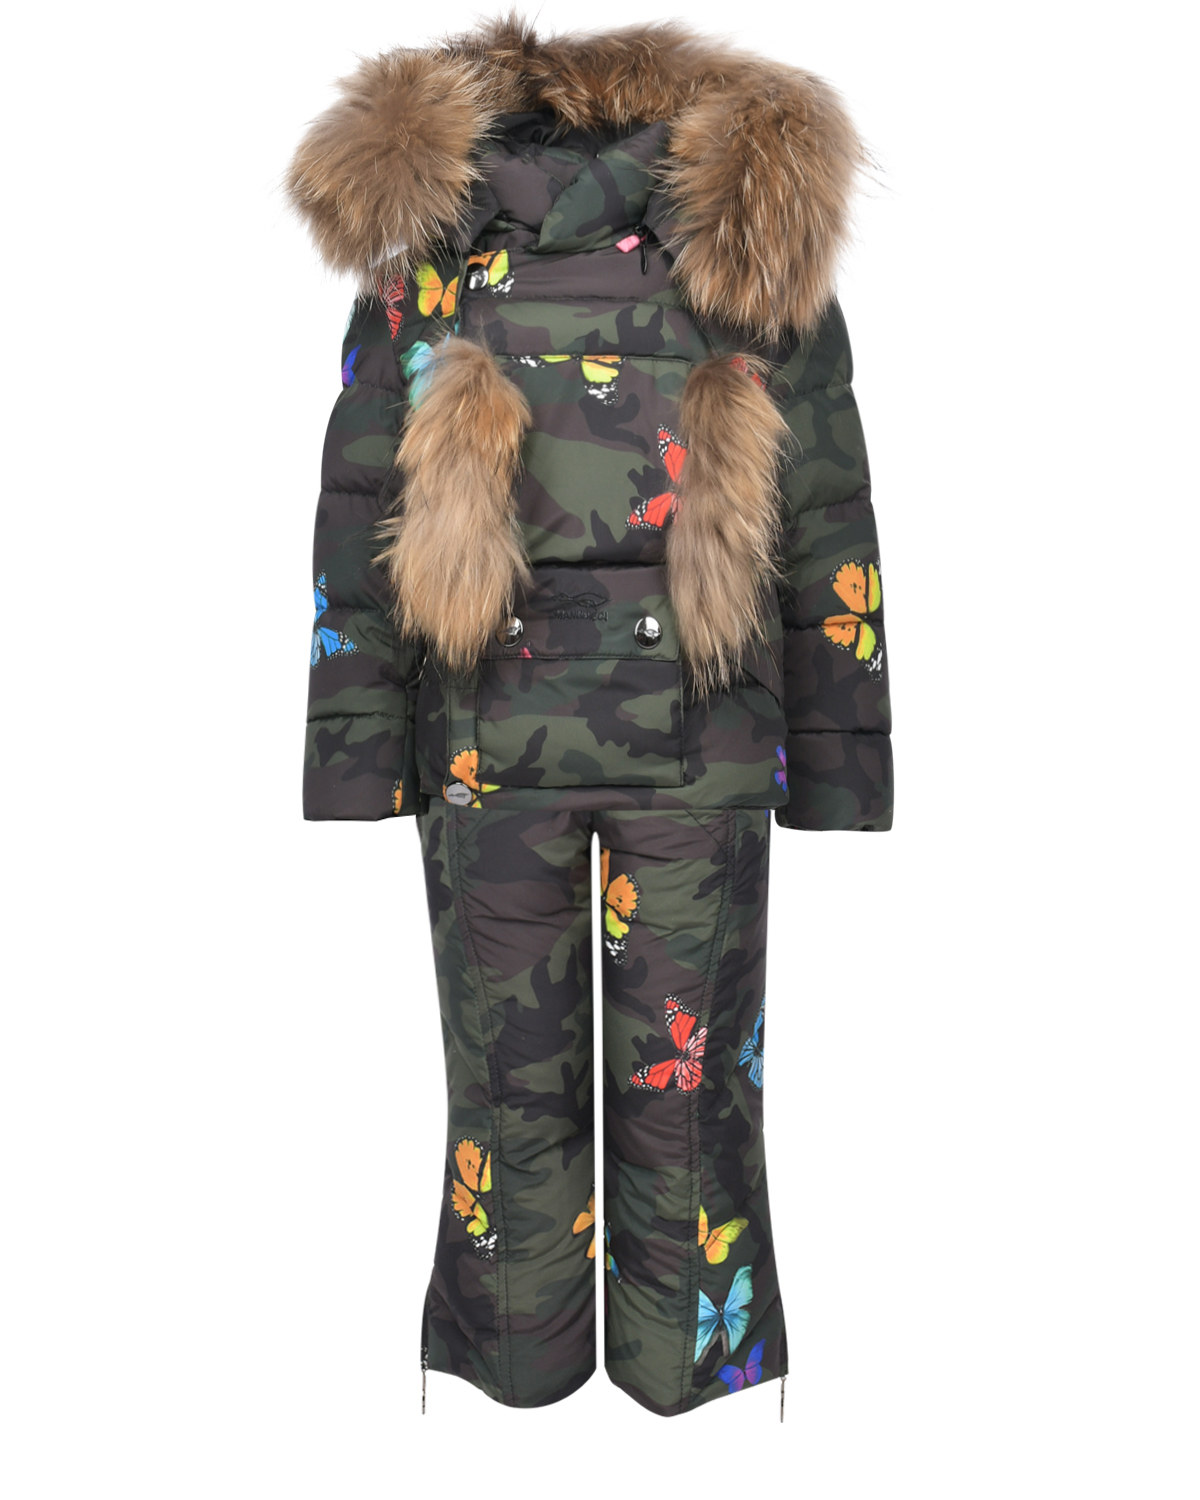 Комплект с принтом "милитари": куртка и полукомбинезон Manudieci детский, размер 92, цвет черный